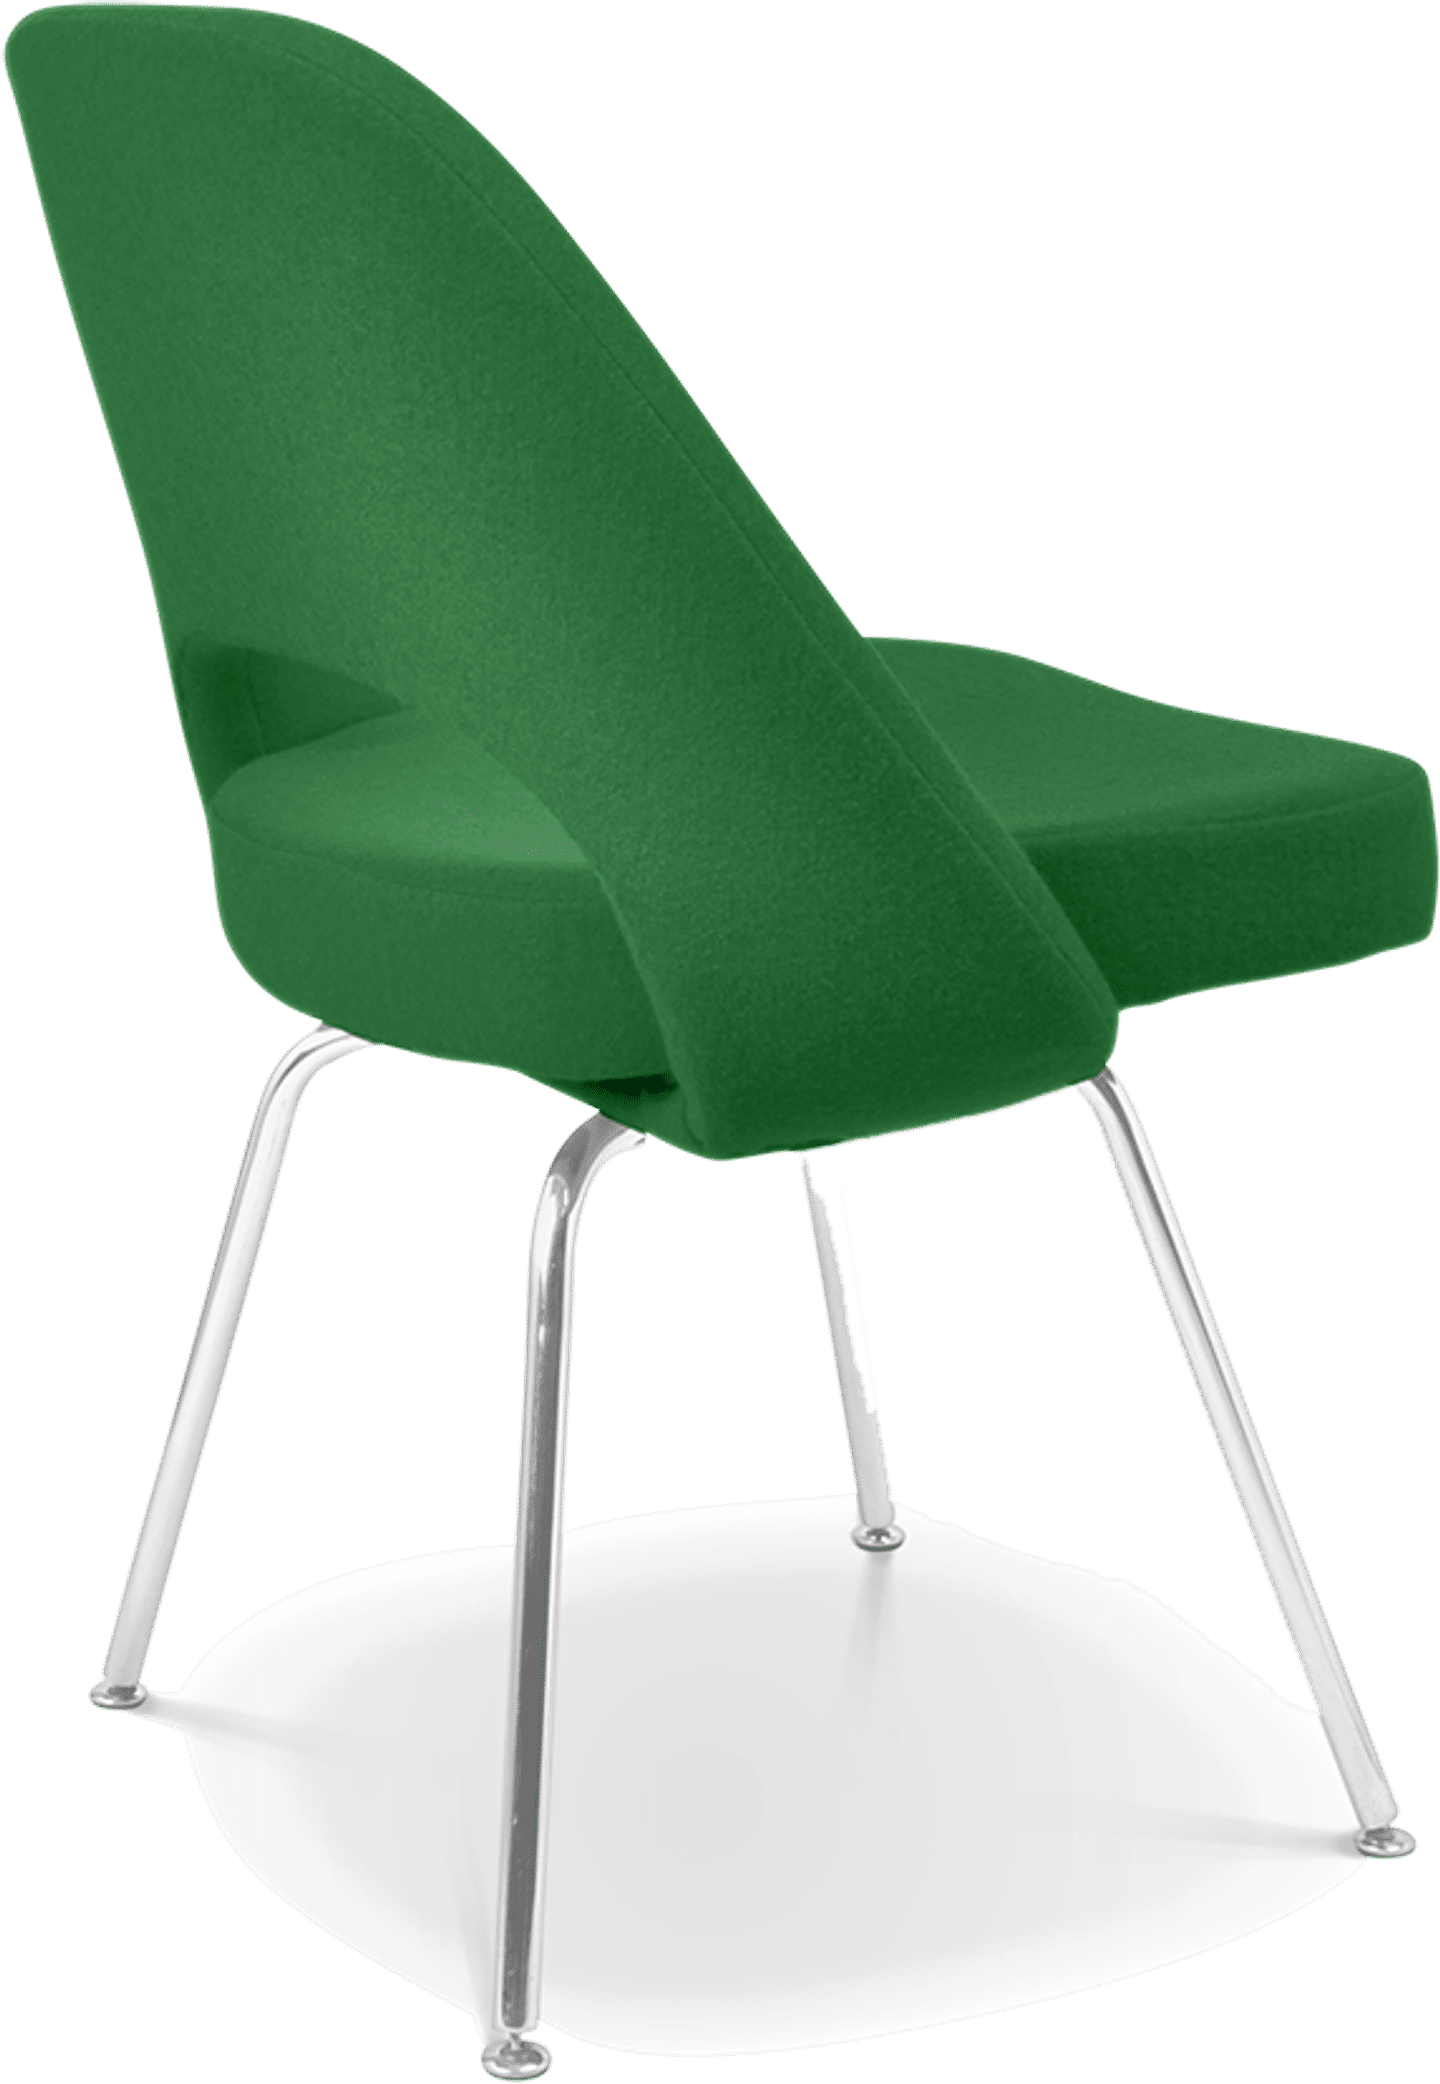 Saarinen Chefsessel Green image.